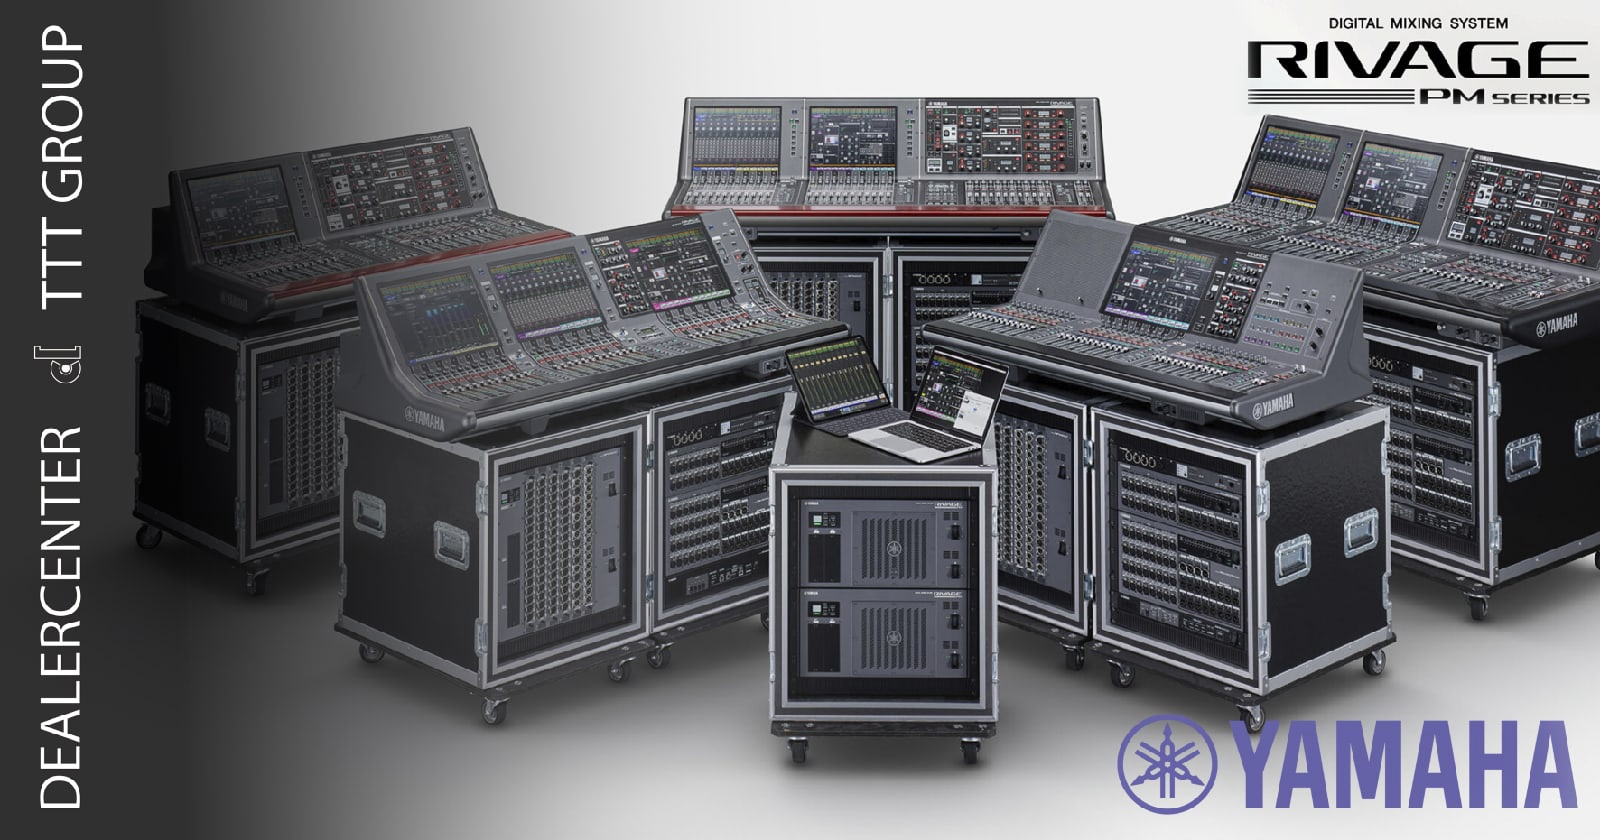 Пожалуй, каждый звукоинженер знает о топовой линейке цифровых микшерных консолей Yamaha Rivage PM series.